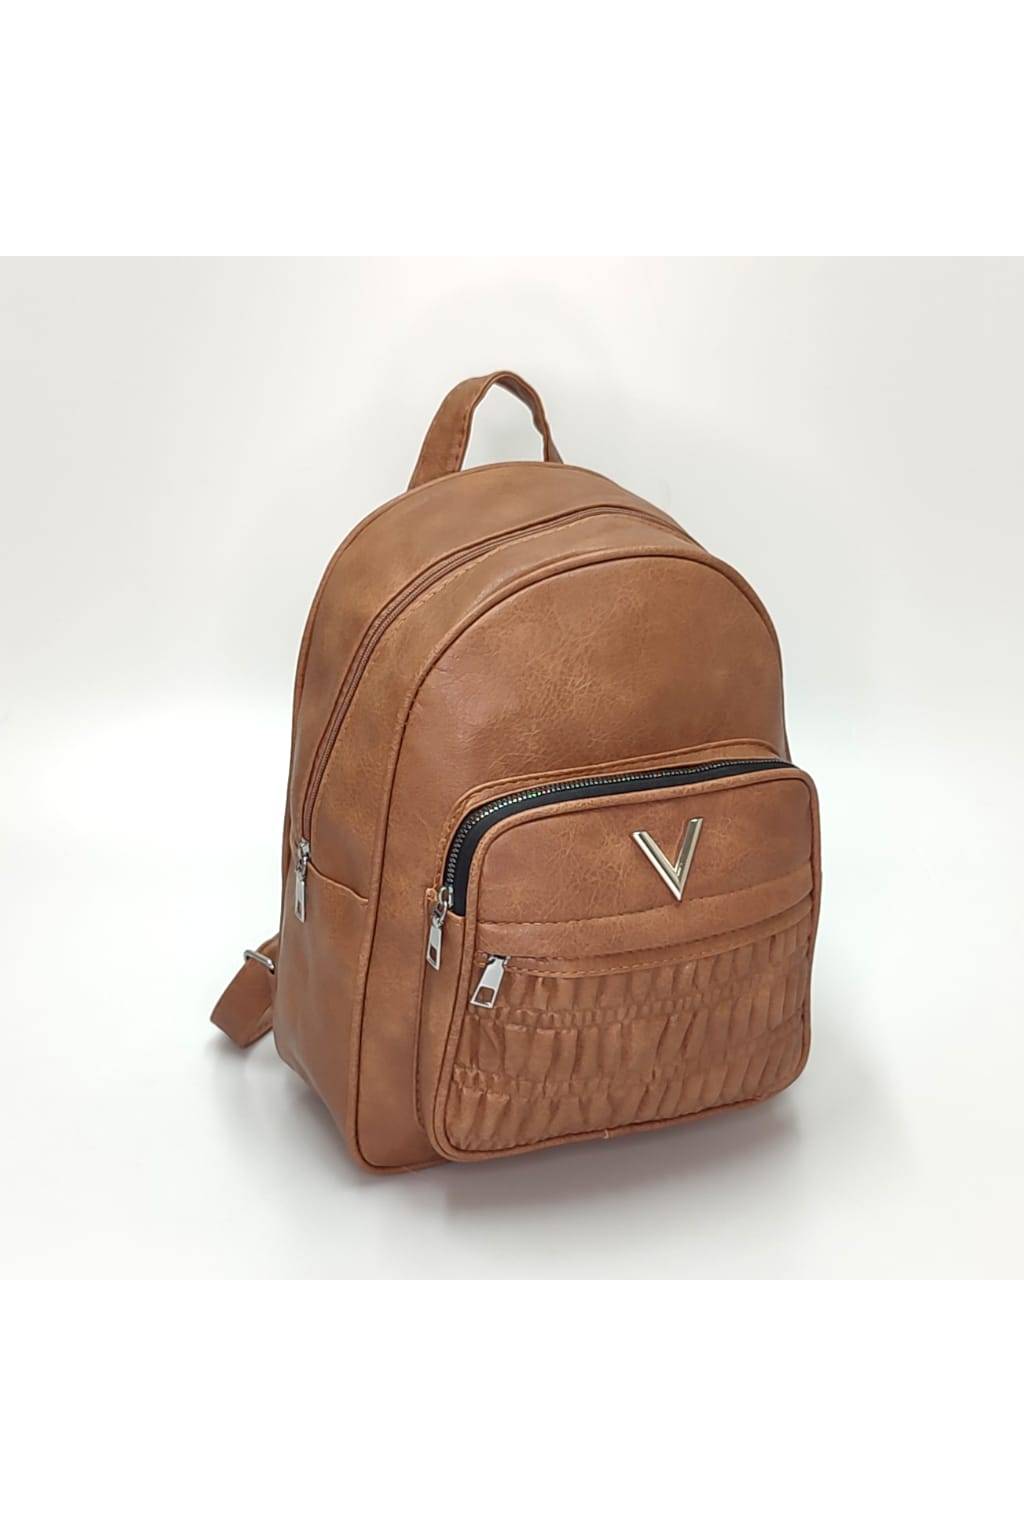 Dámsky ruksak 2565 tmavo béžový www.kabelky vypredaj (2)